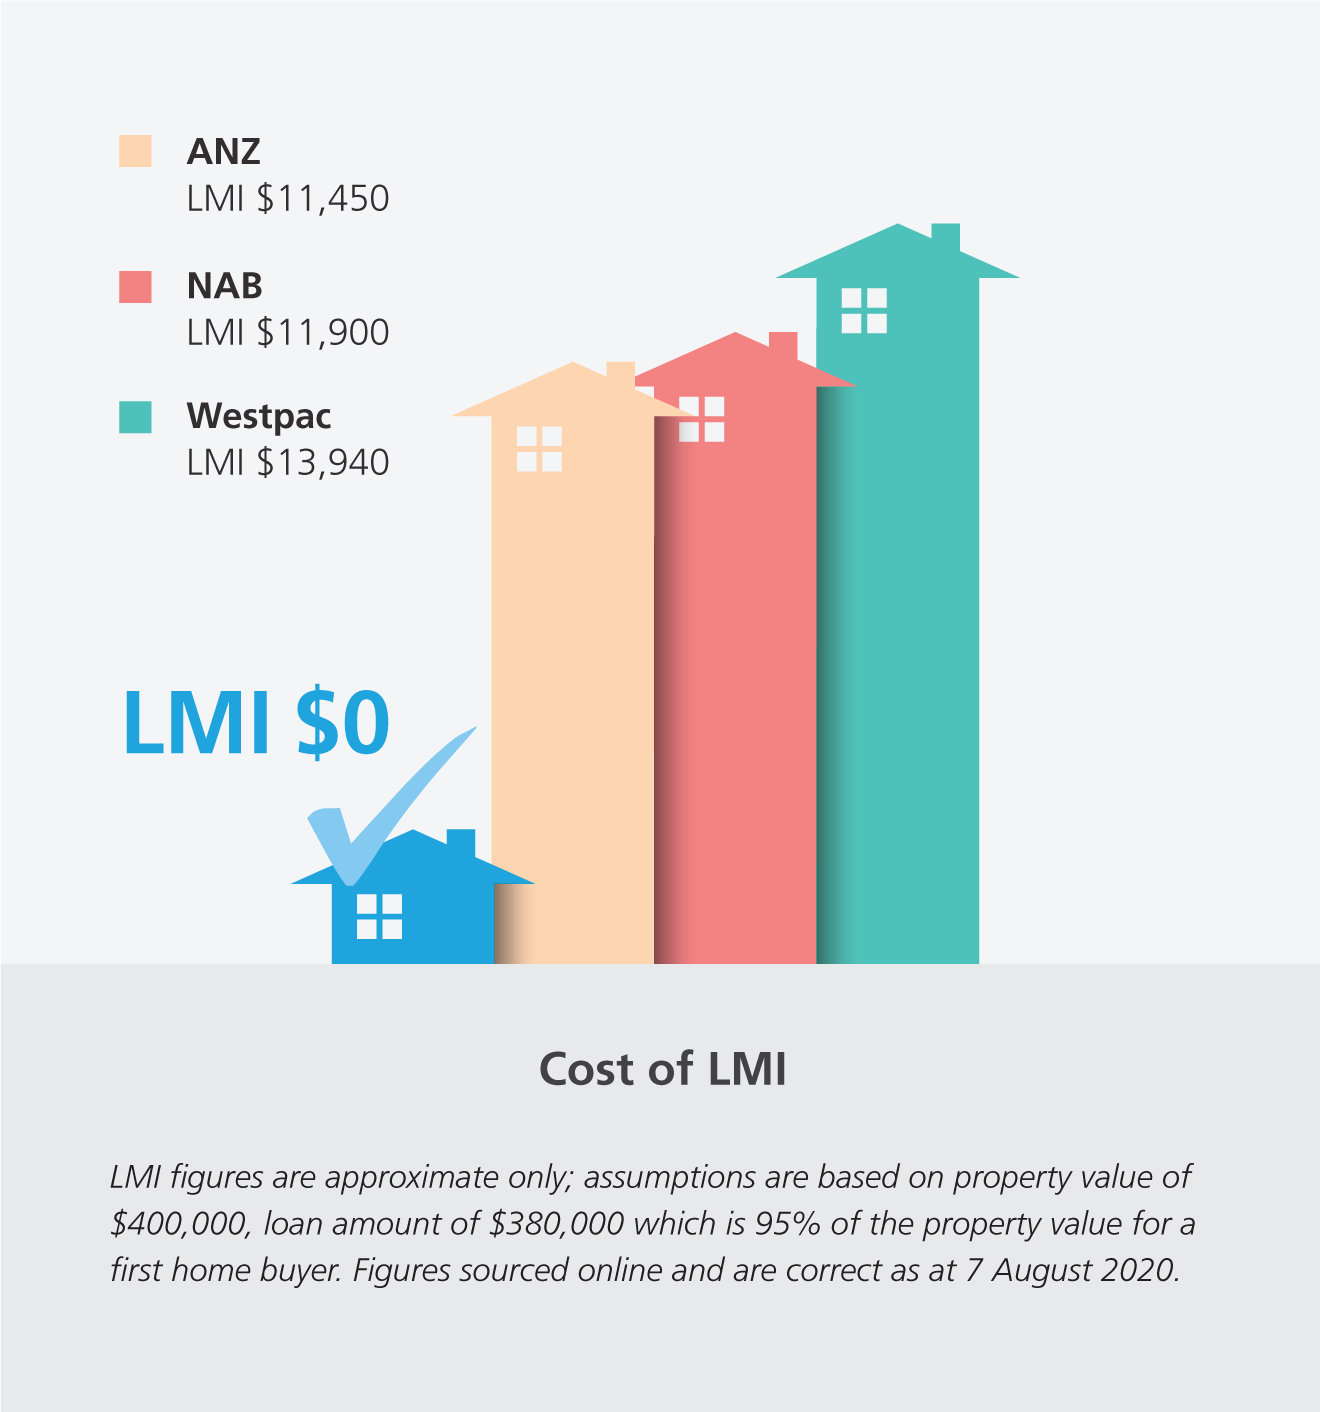 Cost of LMI